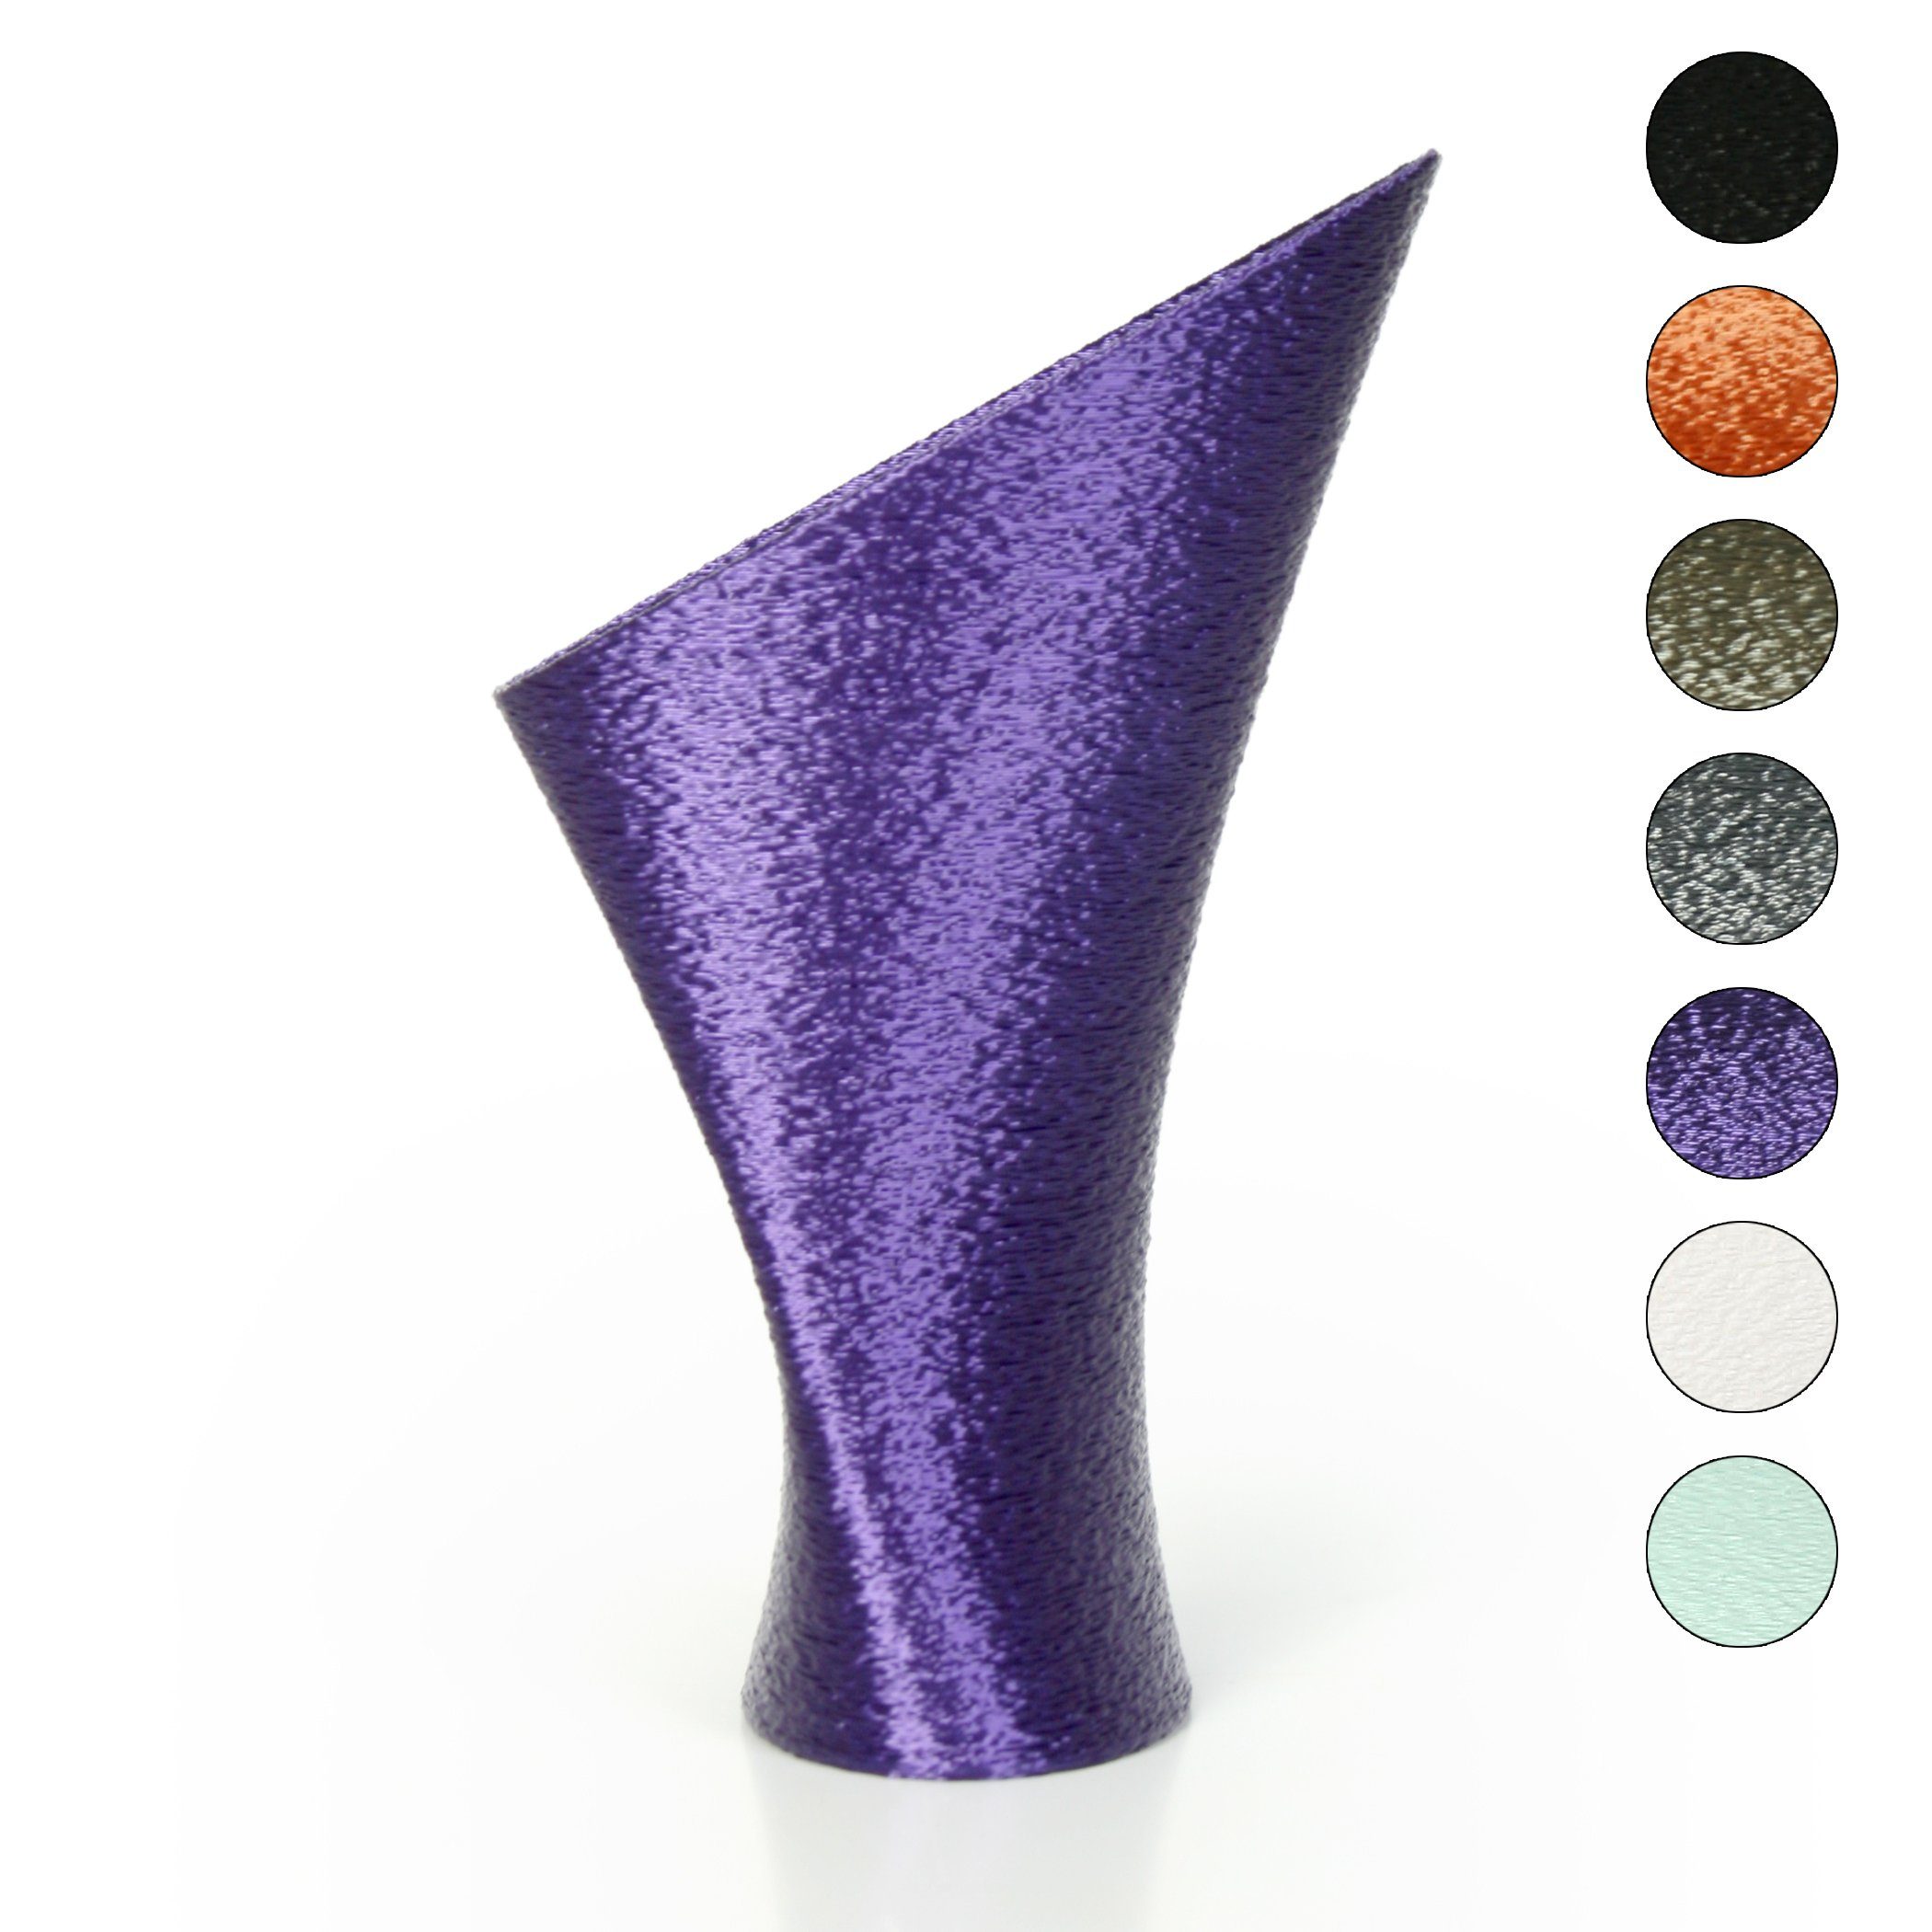 Kreative Feder Dekovase Designer Vase – Dekorative Blumenvase aus Bio-Kunststoff, aus nachwachsenden Rohstoffen; wasserdicht & bruchsicher Violet